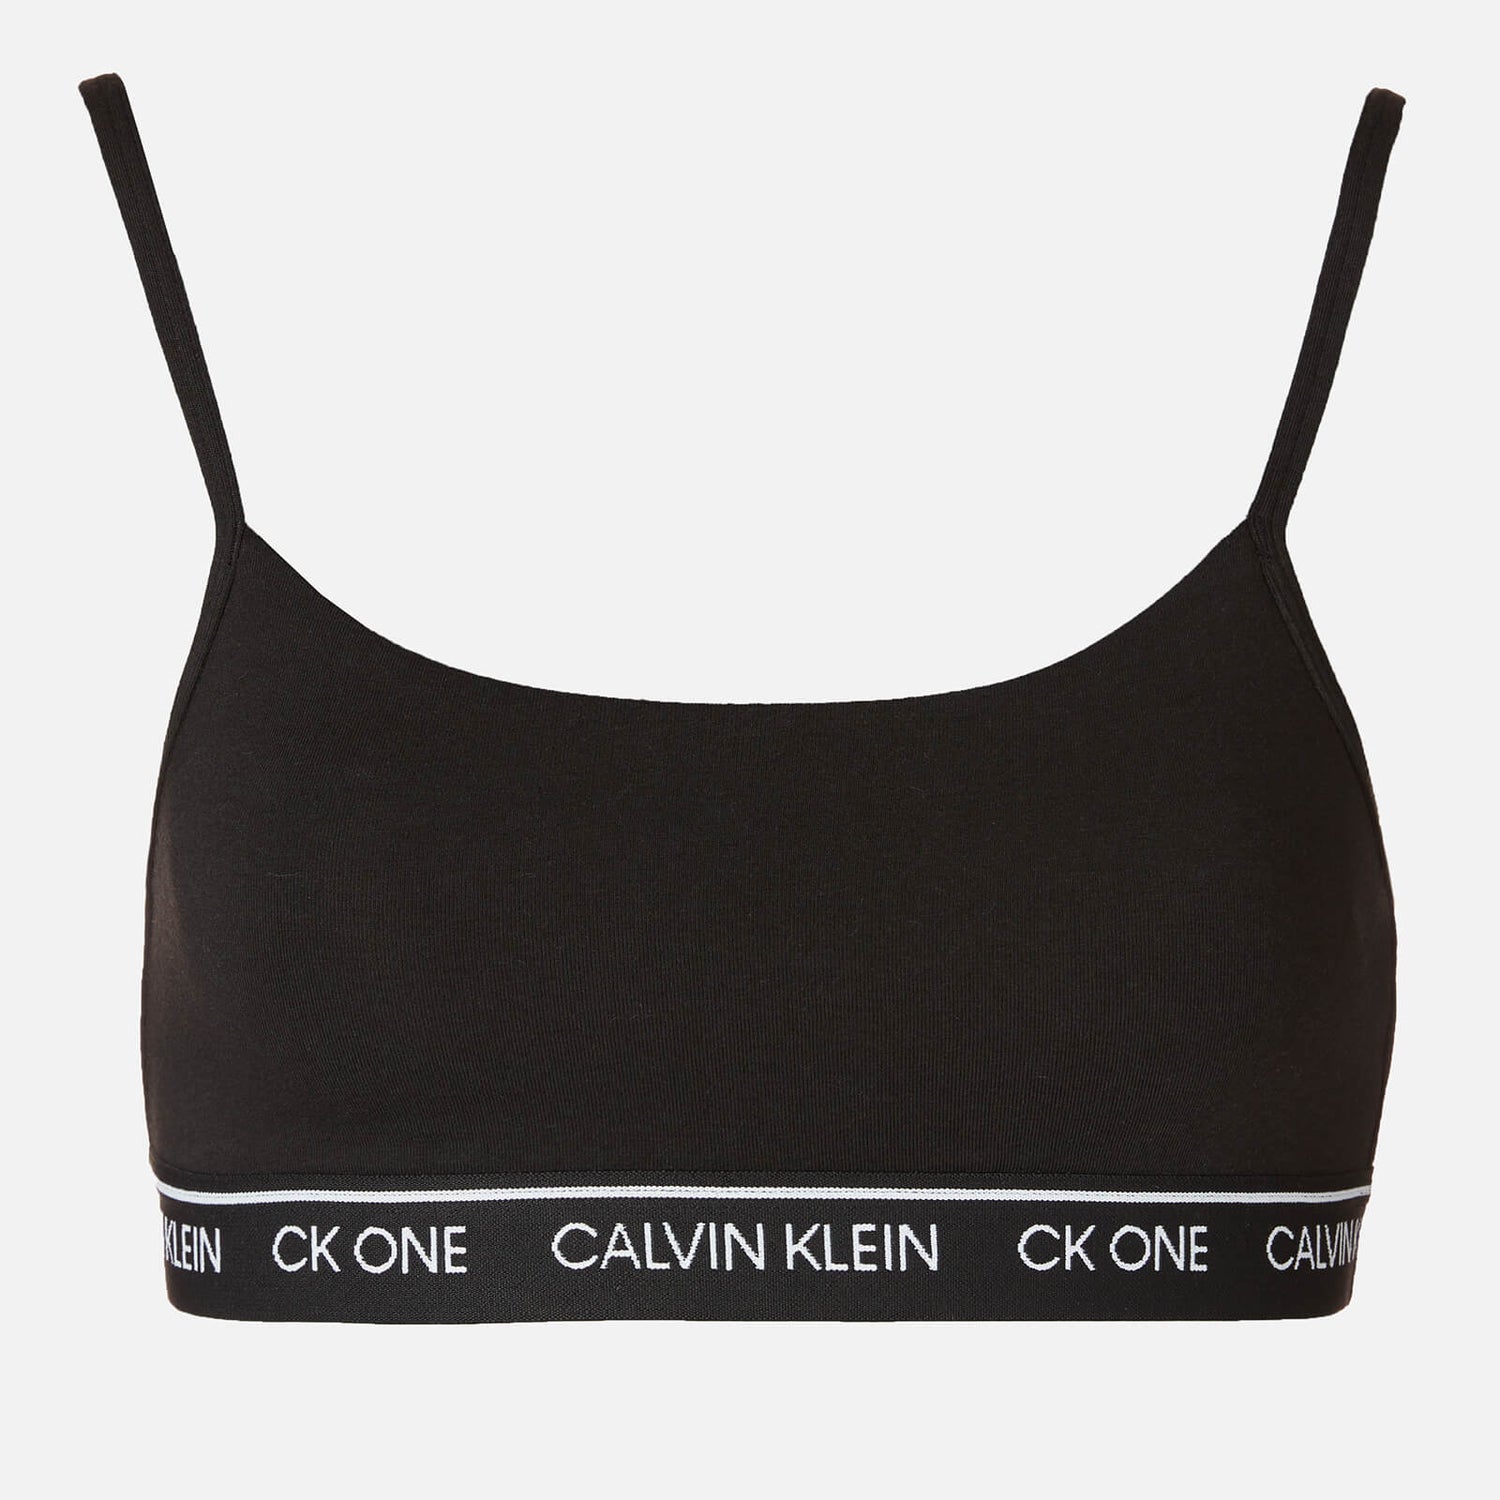 CALVIN KLEIN - Women's unlined bralette 